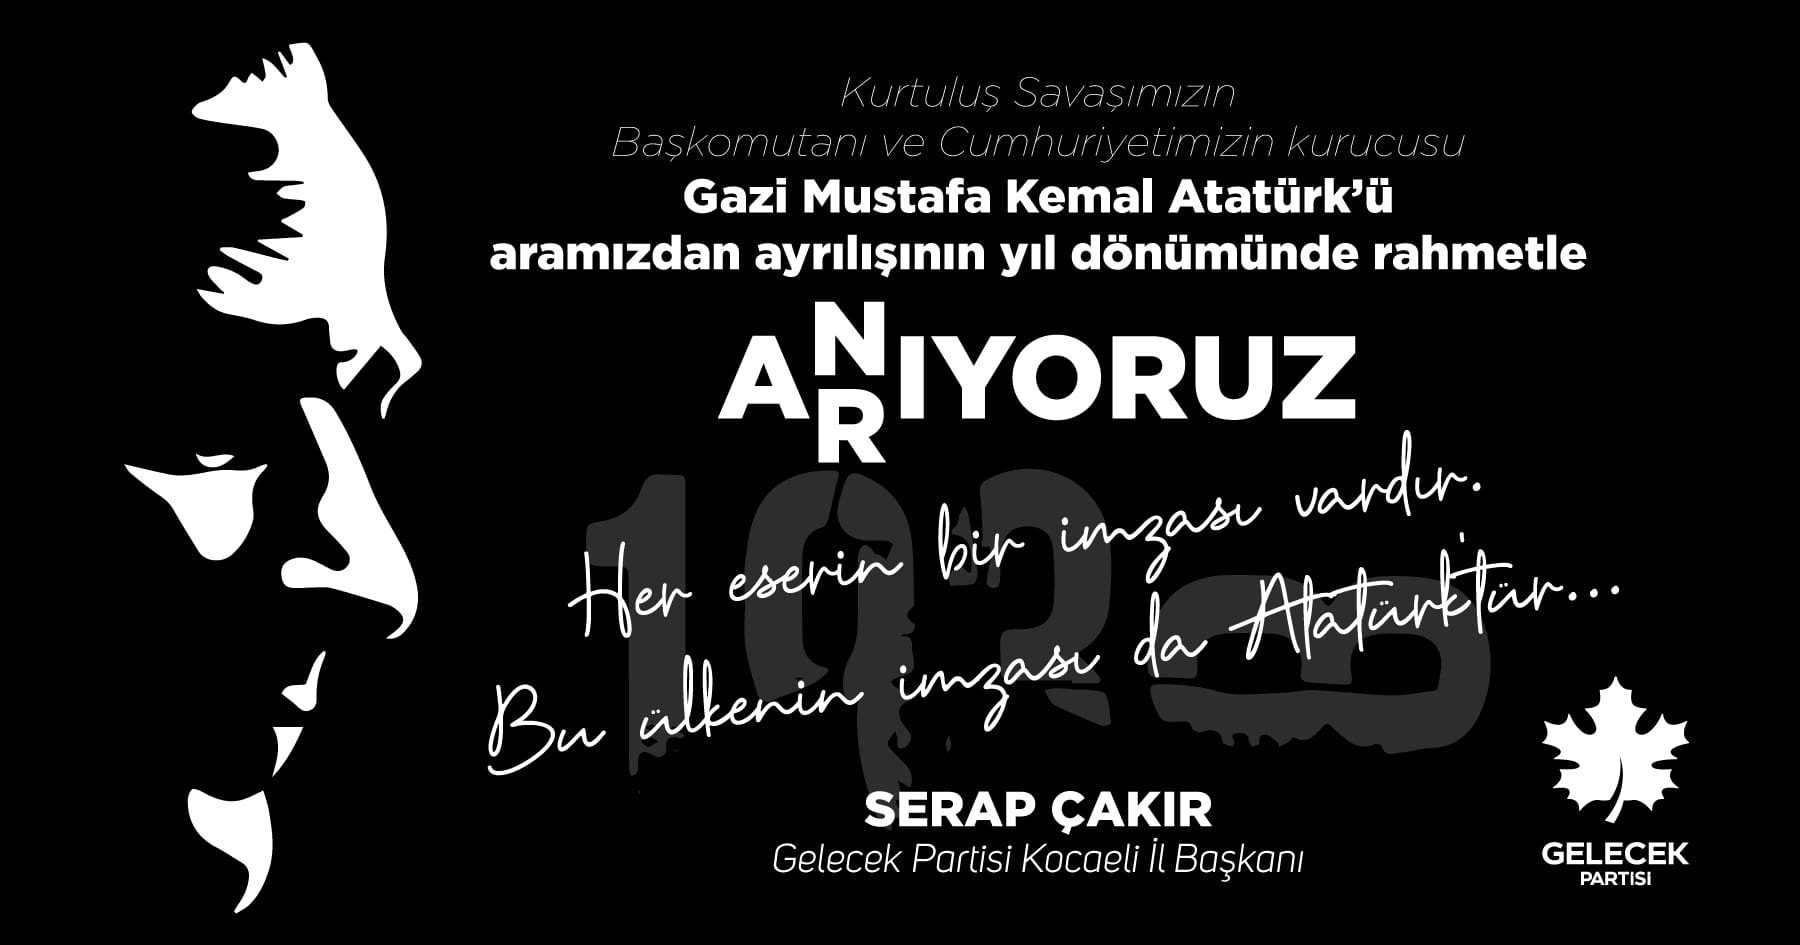 10 Kasım Gazi Mustafa Kemal Atatürk'ü Saygı ve Rahmetle Anıyoruz